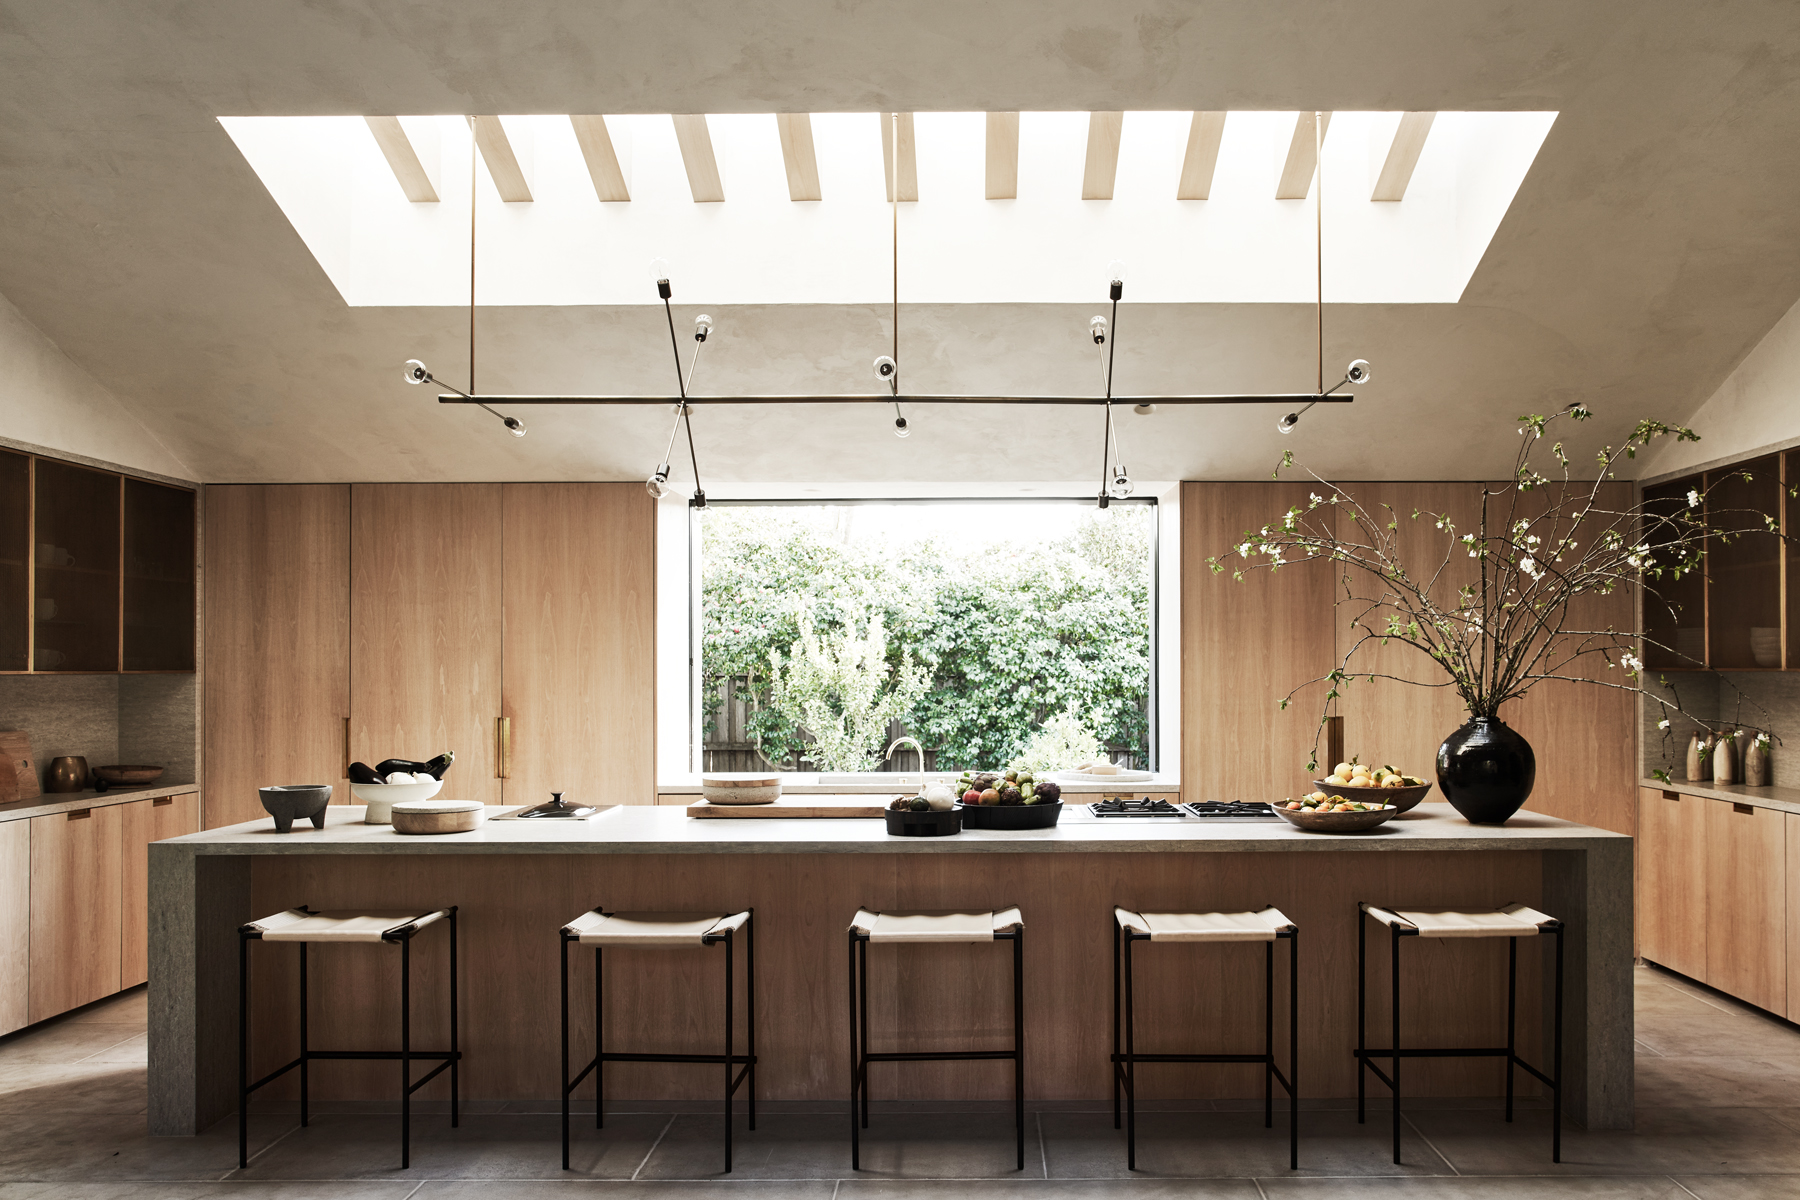 Kitchen designed by Alexander